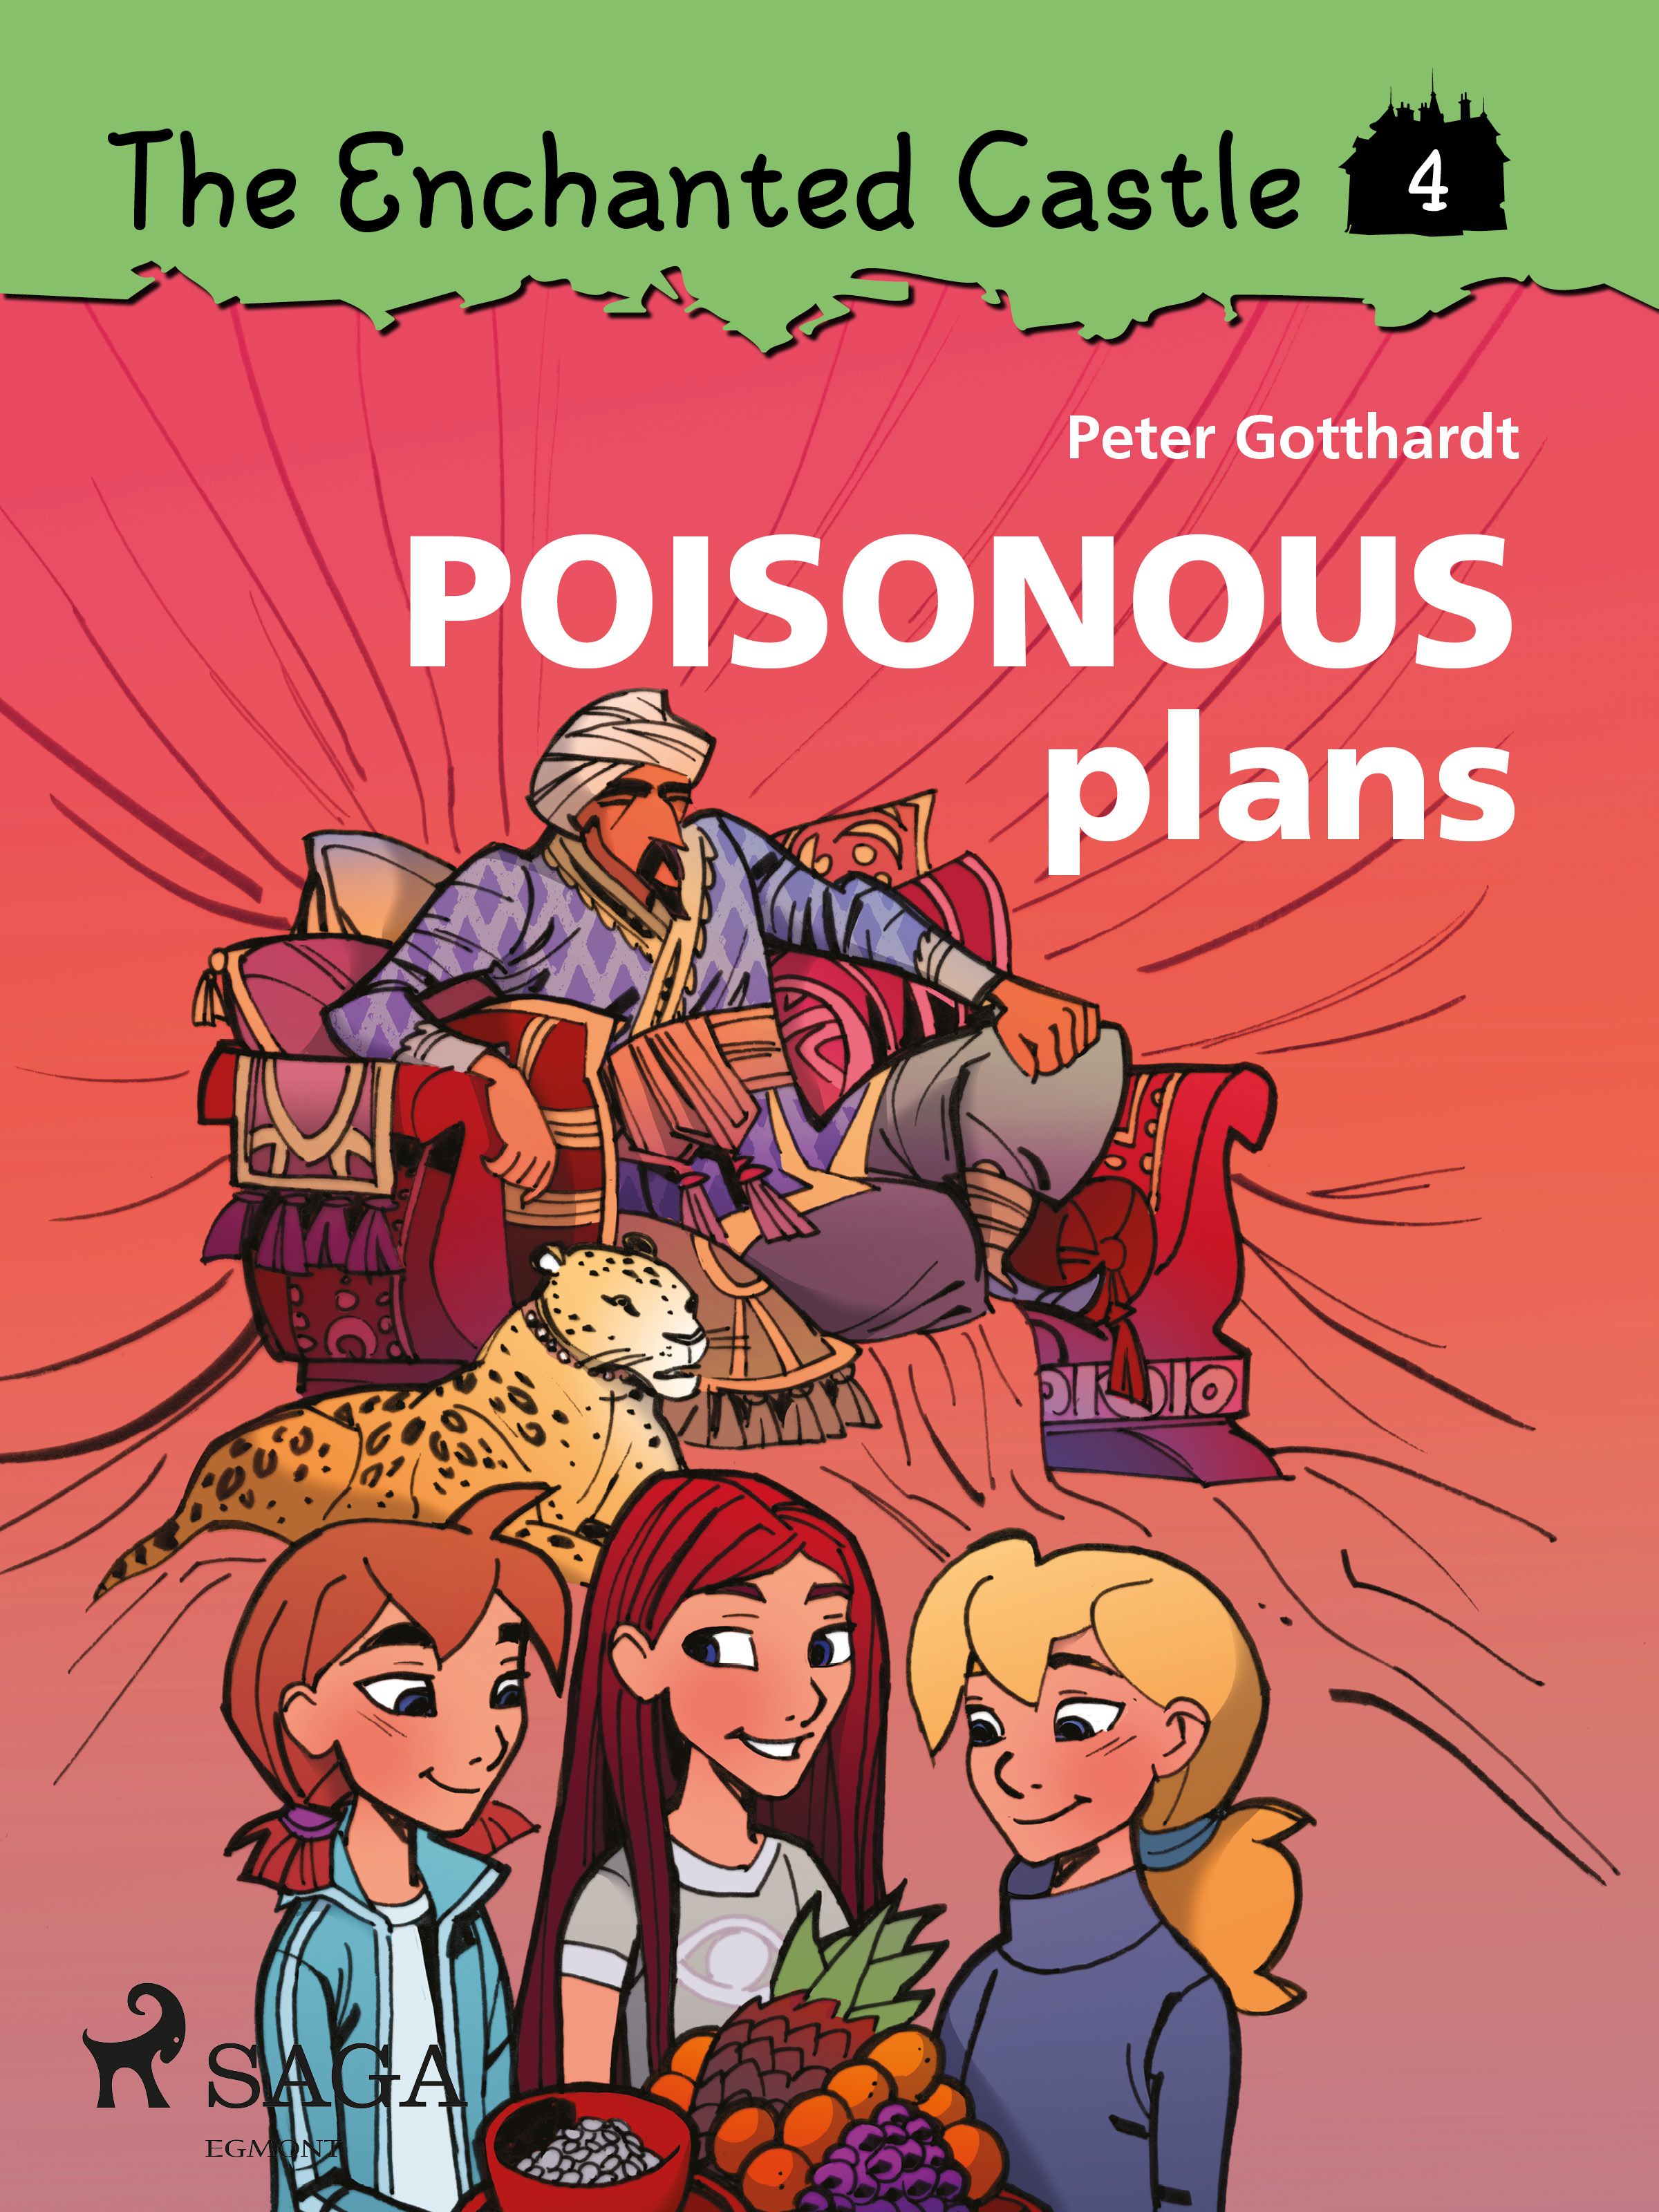 The Enchanted Castle 4 - Poisonous Plans, eBook by Peter Gotthardt